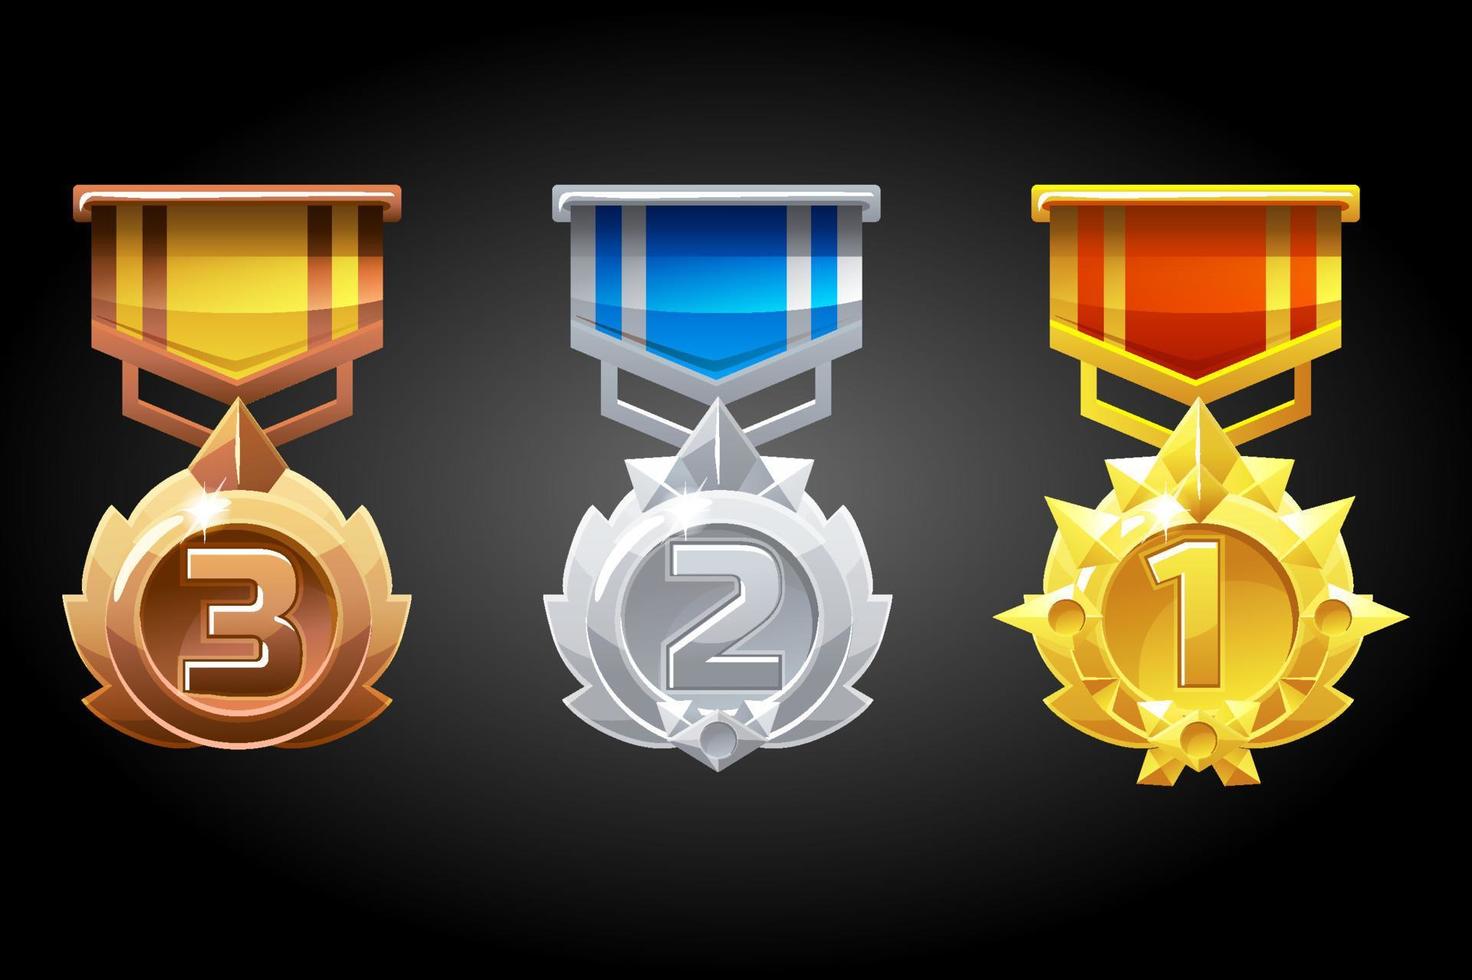 gerangschikte medailles zijn zilver, brons en goud voor het spel. vector set van verschillende prijzen voor de winnaars.